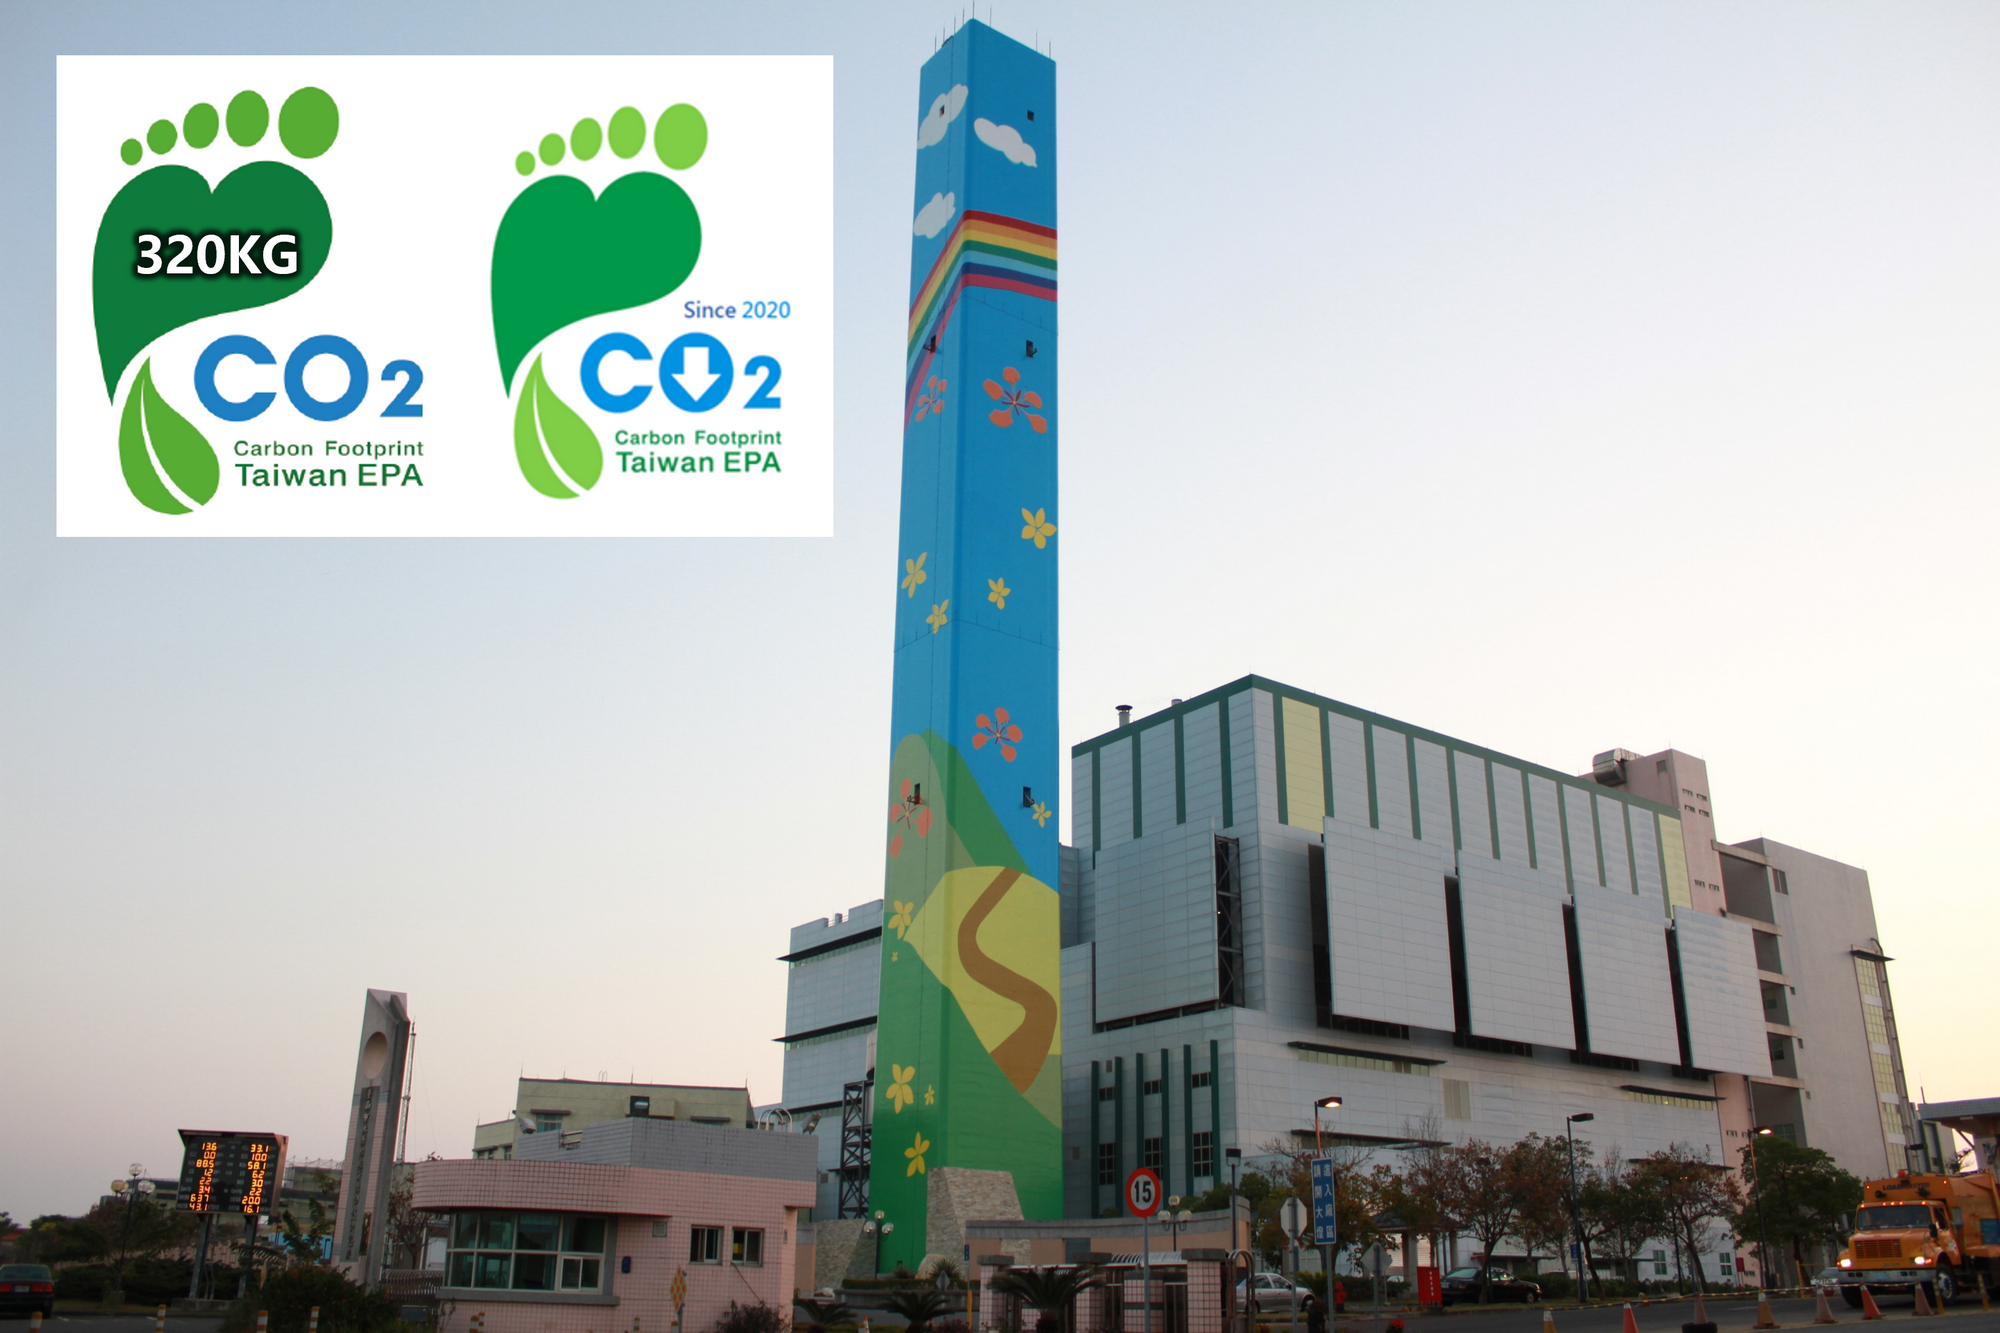 臺南碳標籤數量全國第一